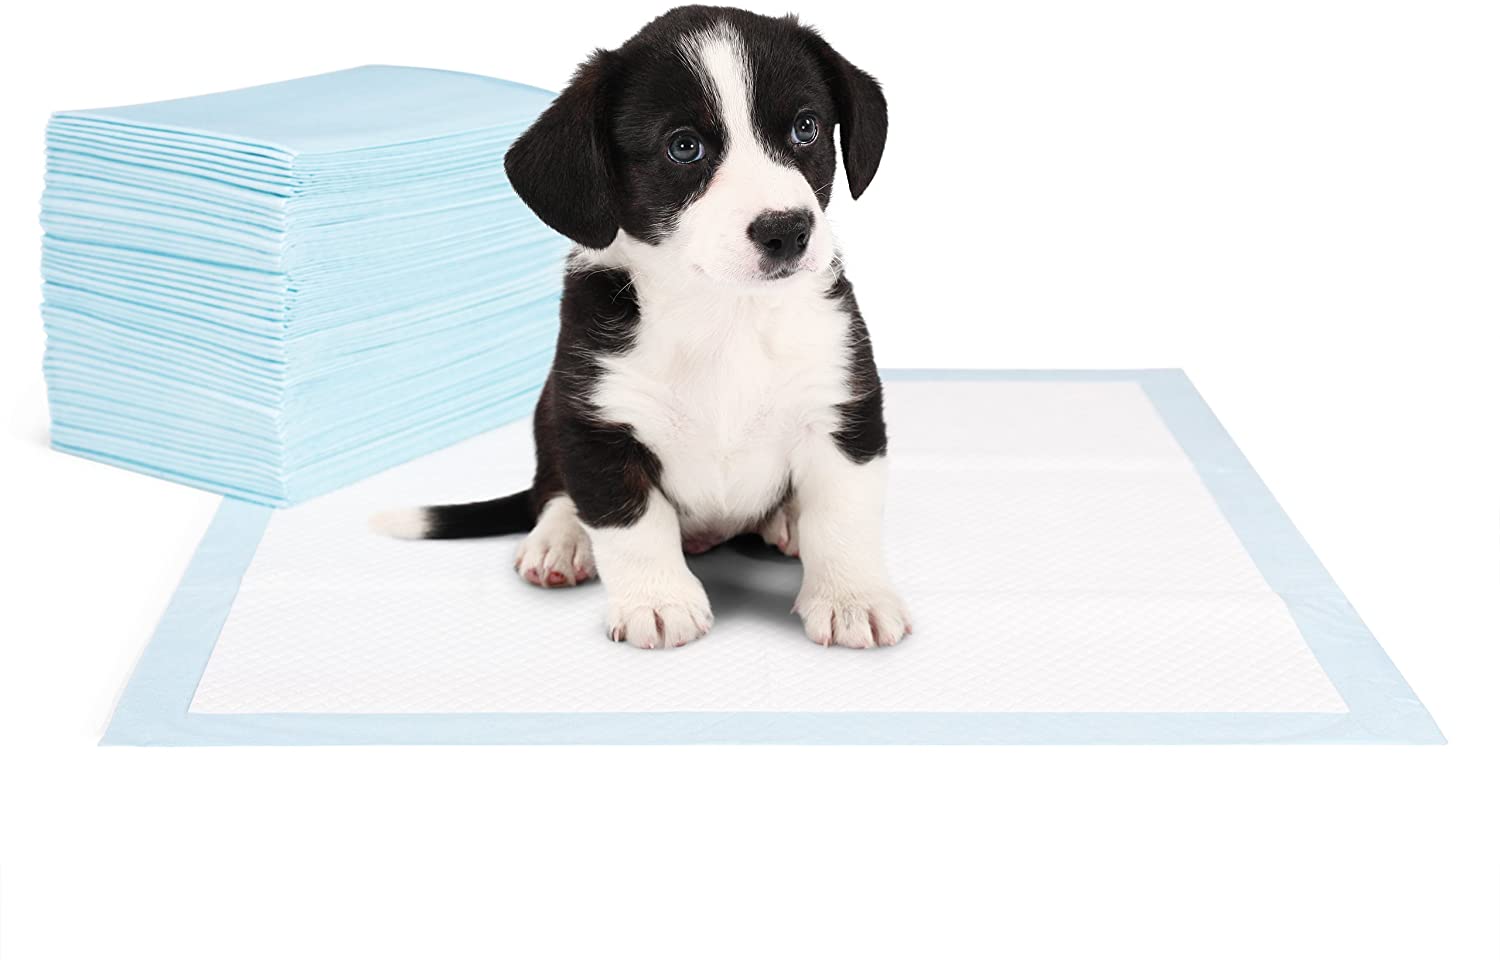 پد ادرار کردن سگ با جذب بالا با برچسب در چهار گوشه پد یکبار مصرف سگ پوتی پد آموزش توله سگ جاذب برای ادرار کردن